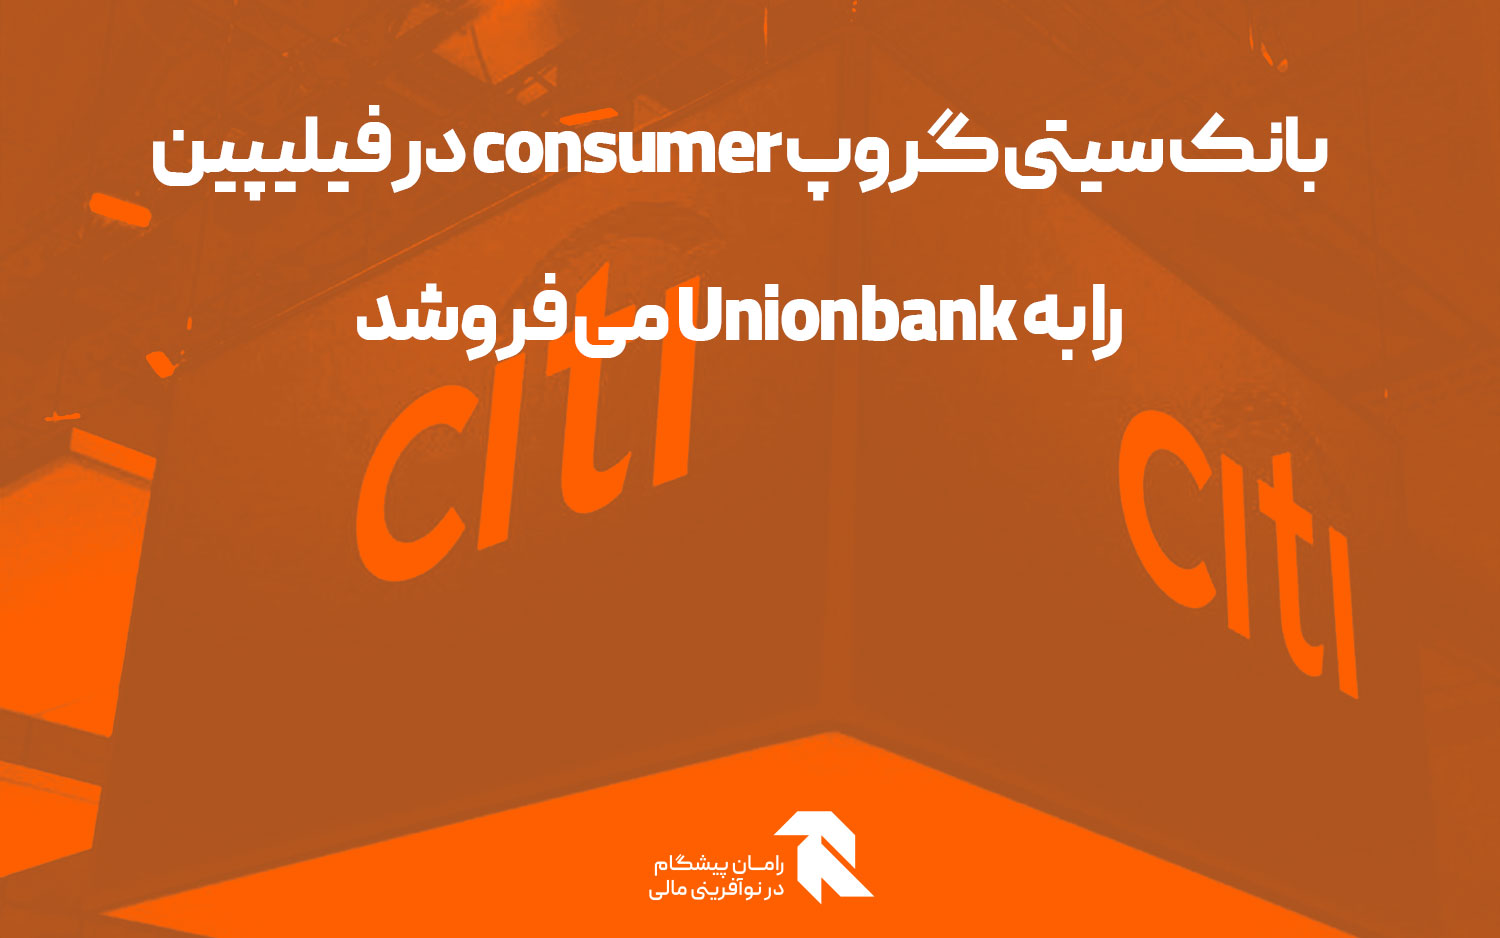 بانک سیتی گروپ consumer در فیلیپین را به Unionbank می فروشد